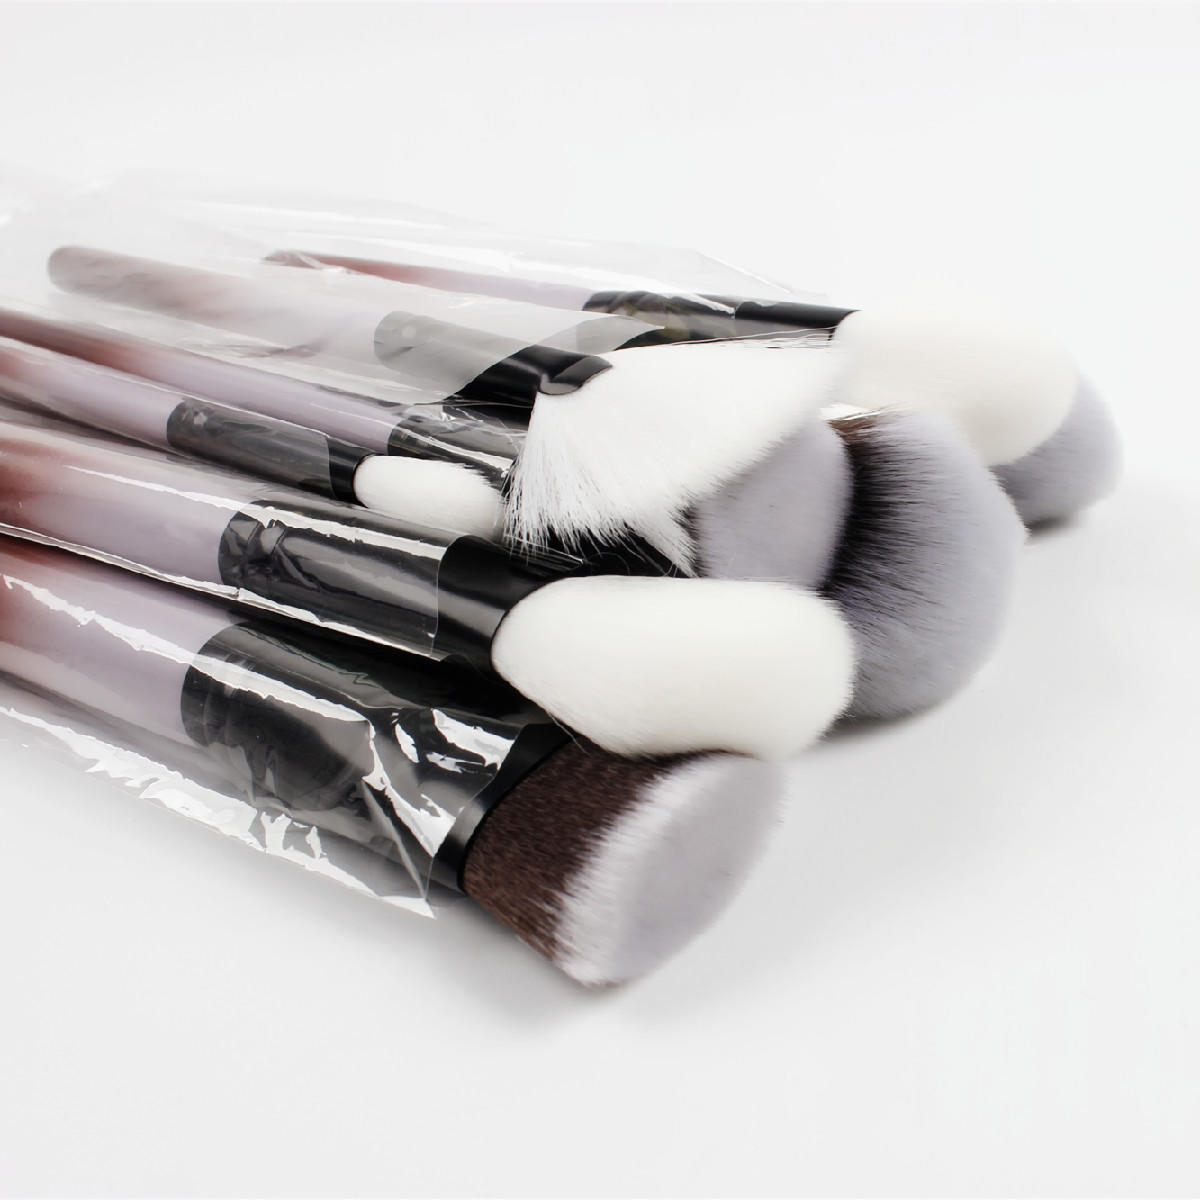 Suprabeauty latest design 18pcs set eye makeup brushes set eye shadow brushes beauty tools hot sale